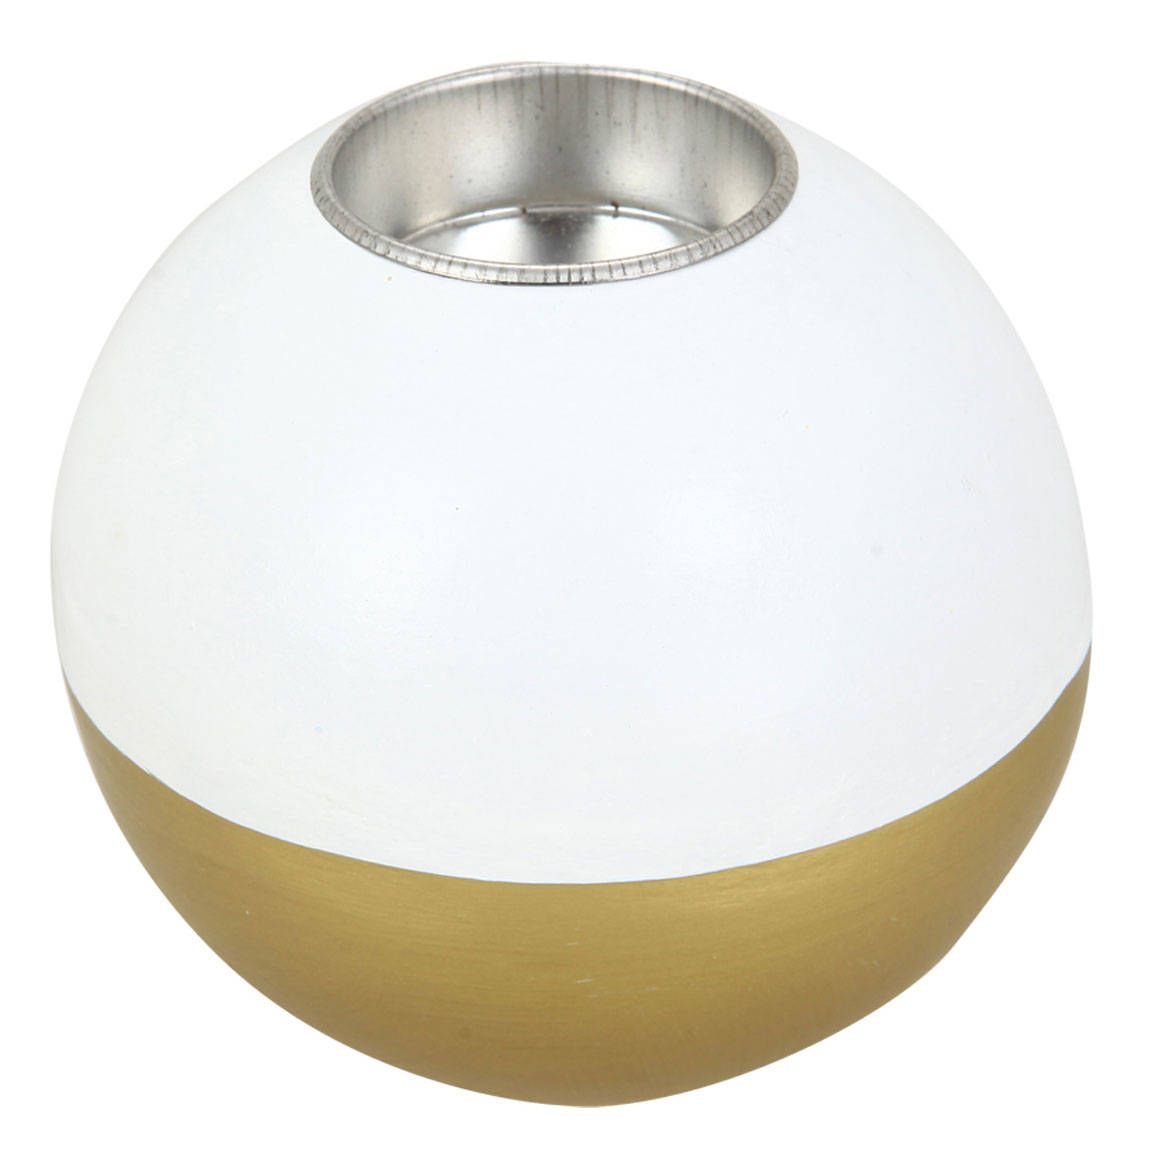 Autour de Minuit Dřevěný svícen ve tvaru koule, bílá a zlatá barva, Ø 10cm - EMAKO.CZ s.r.o.